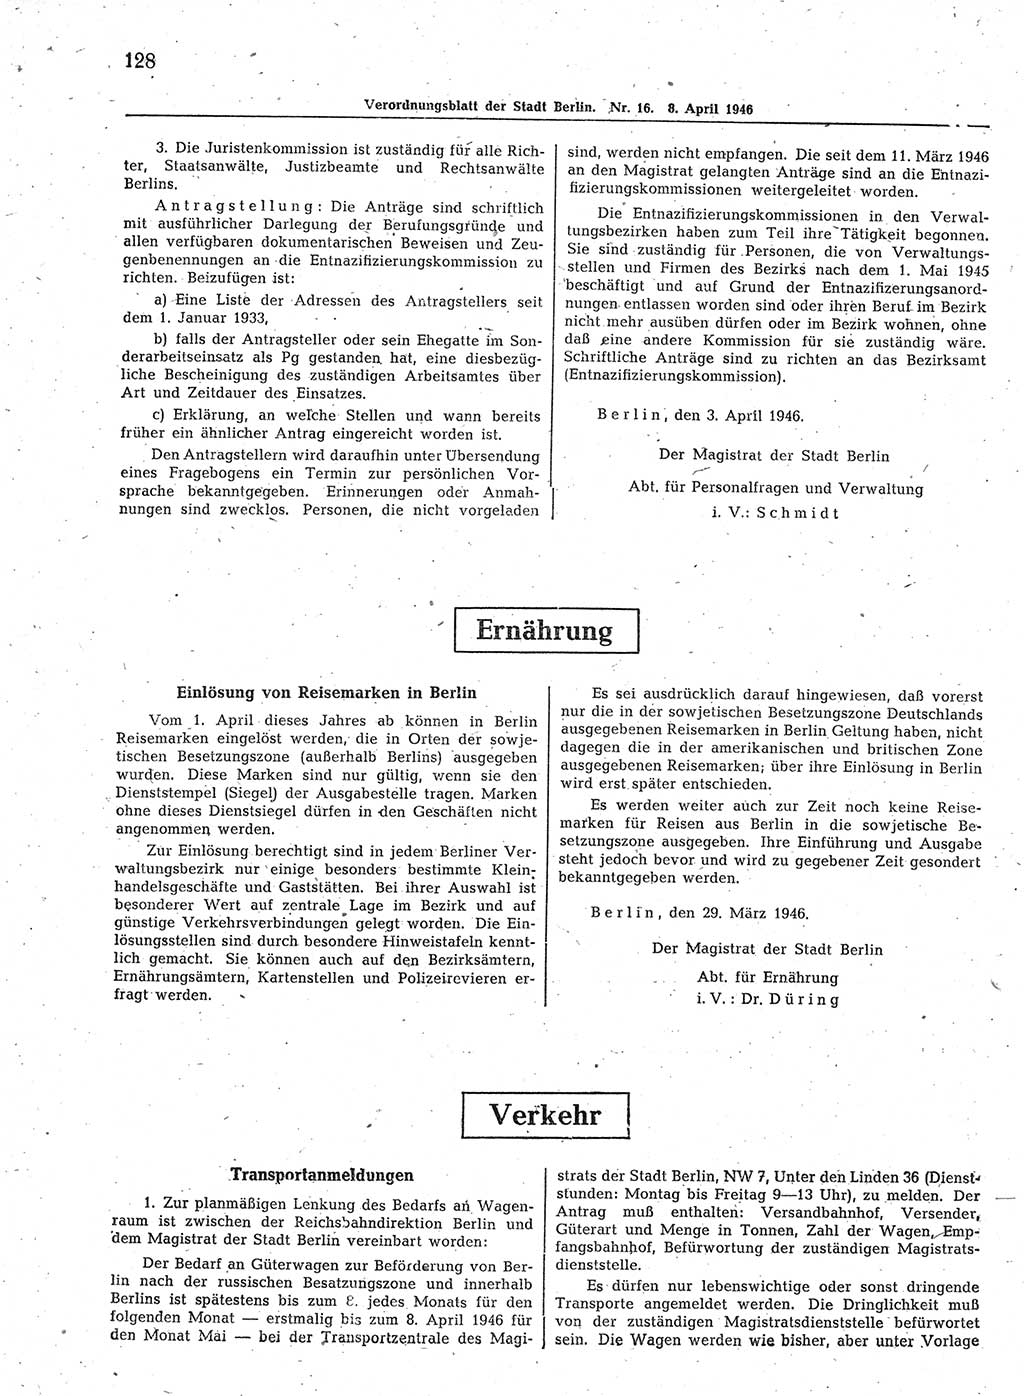 Verordnungsblatt (VOBl.) der Stadt Berlin, für Groß-Berlin 1946, Seite 128 (VOBl. Bln. 1946, S. 128)